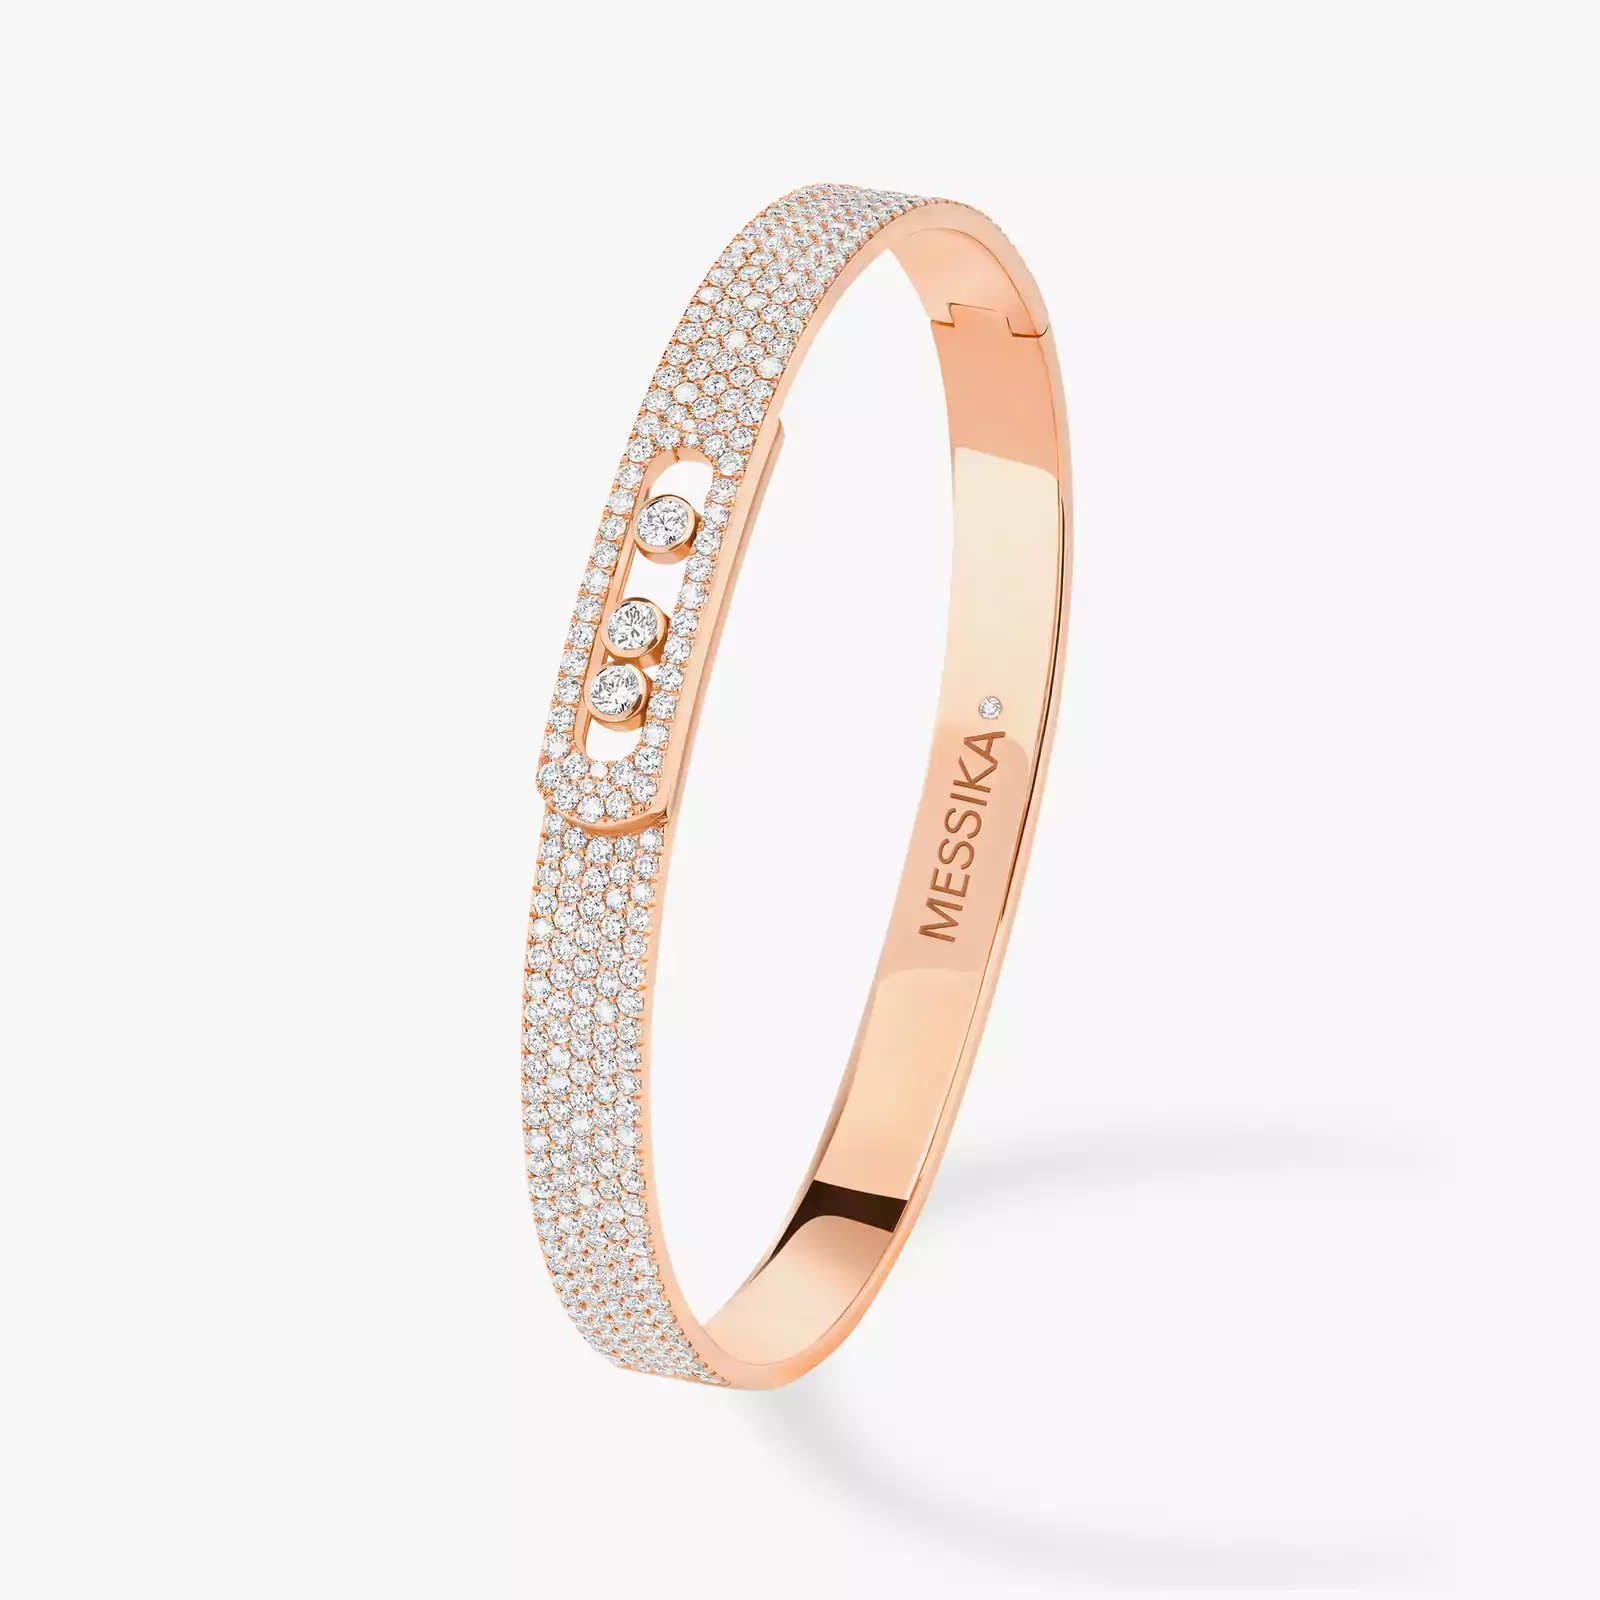 Bracelet For Her Pink Gold Diamond Move Noa Full Pavé Bangle 12722-PG